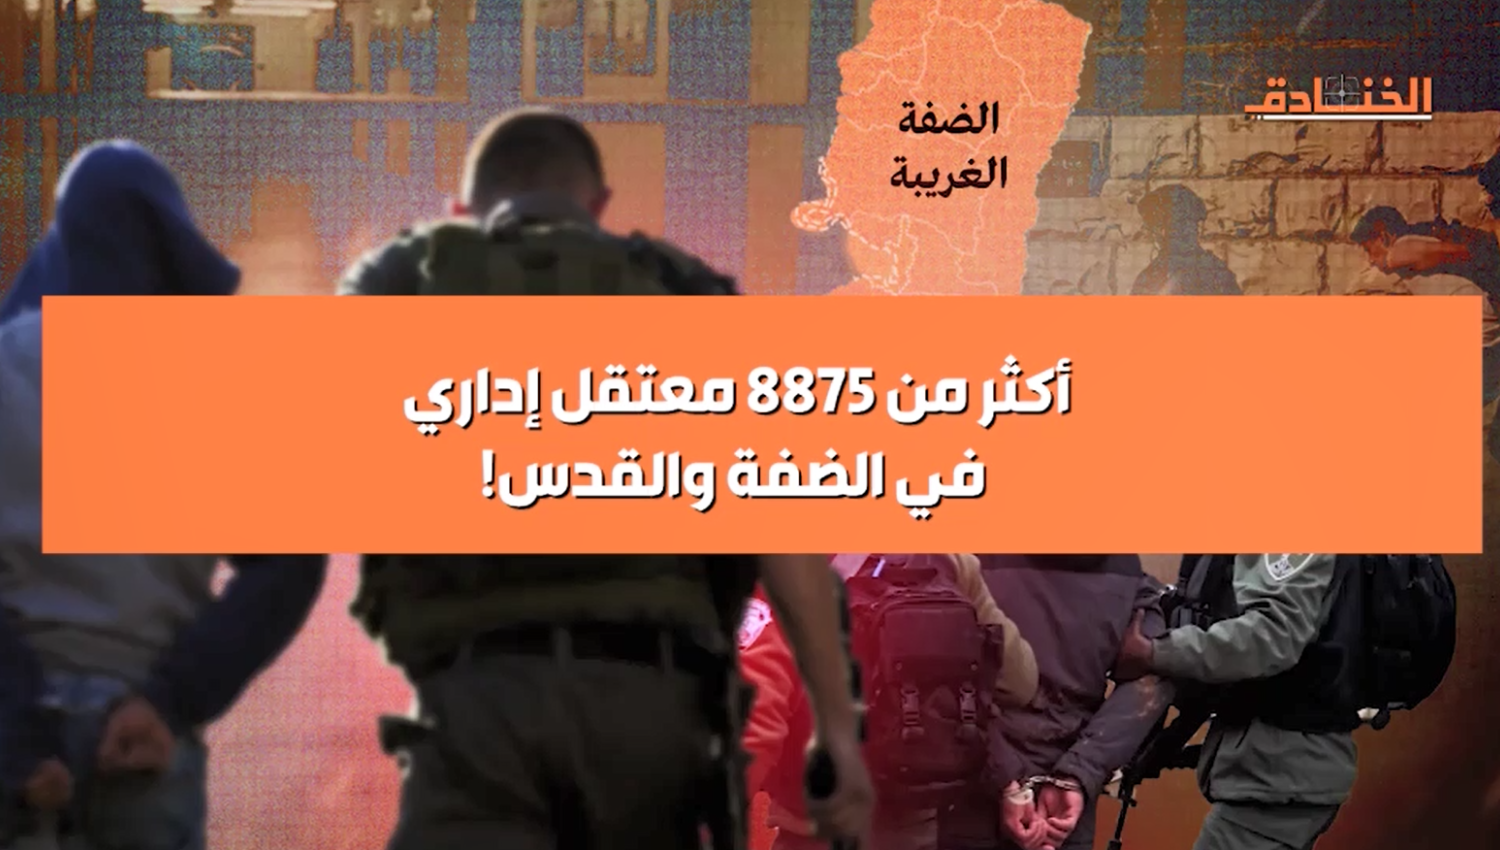 أكثر من 8875 معتقل إداري في الضفة والقدس !